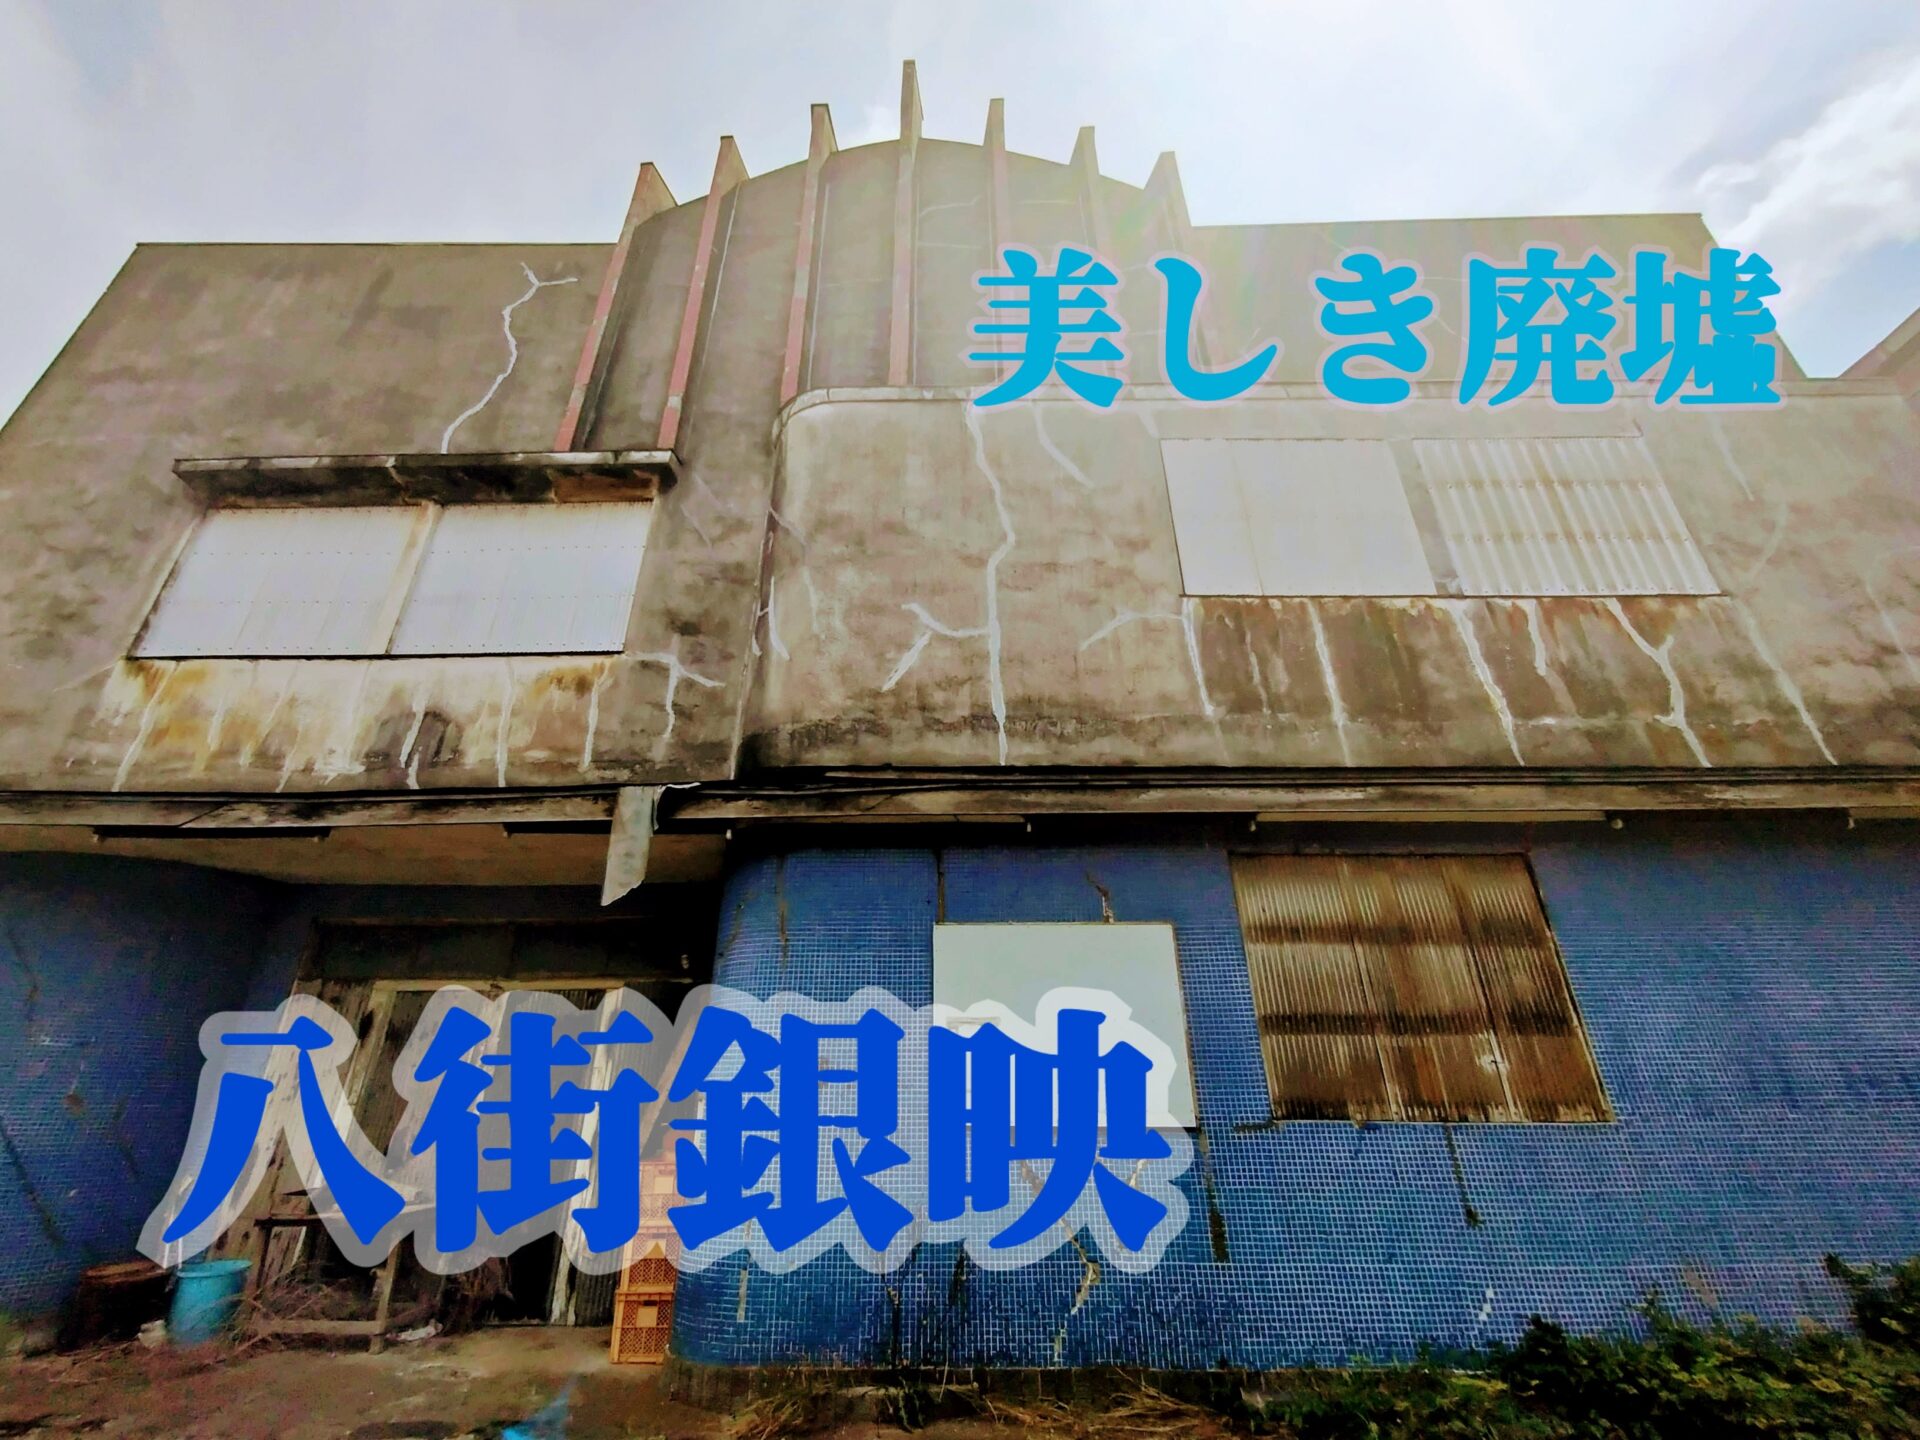 【美しき廃墟】昭和の記憶を残す「八街銀映」と「銀映アーケード」を愛でる。【映画館】